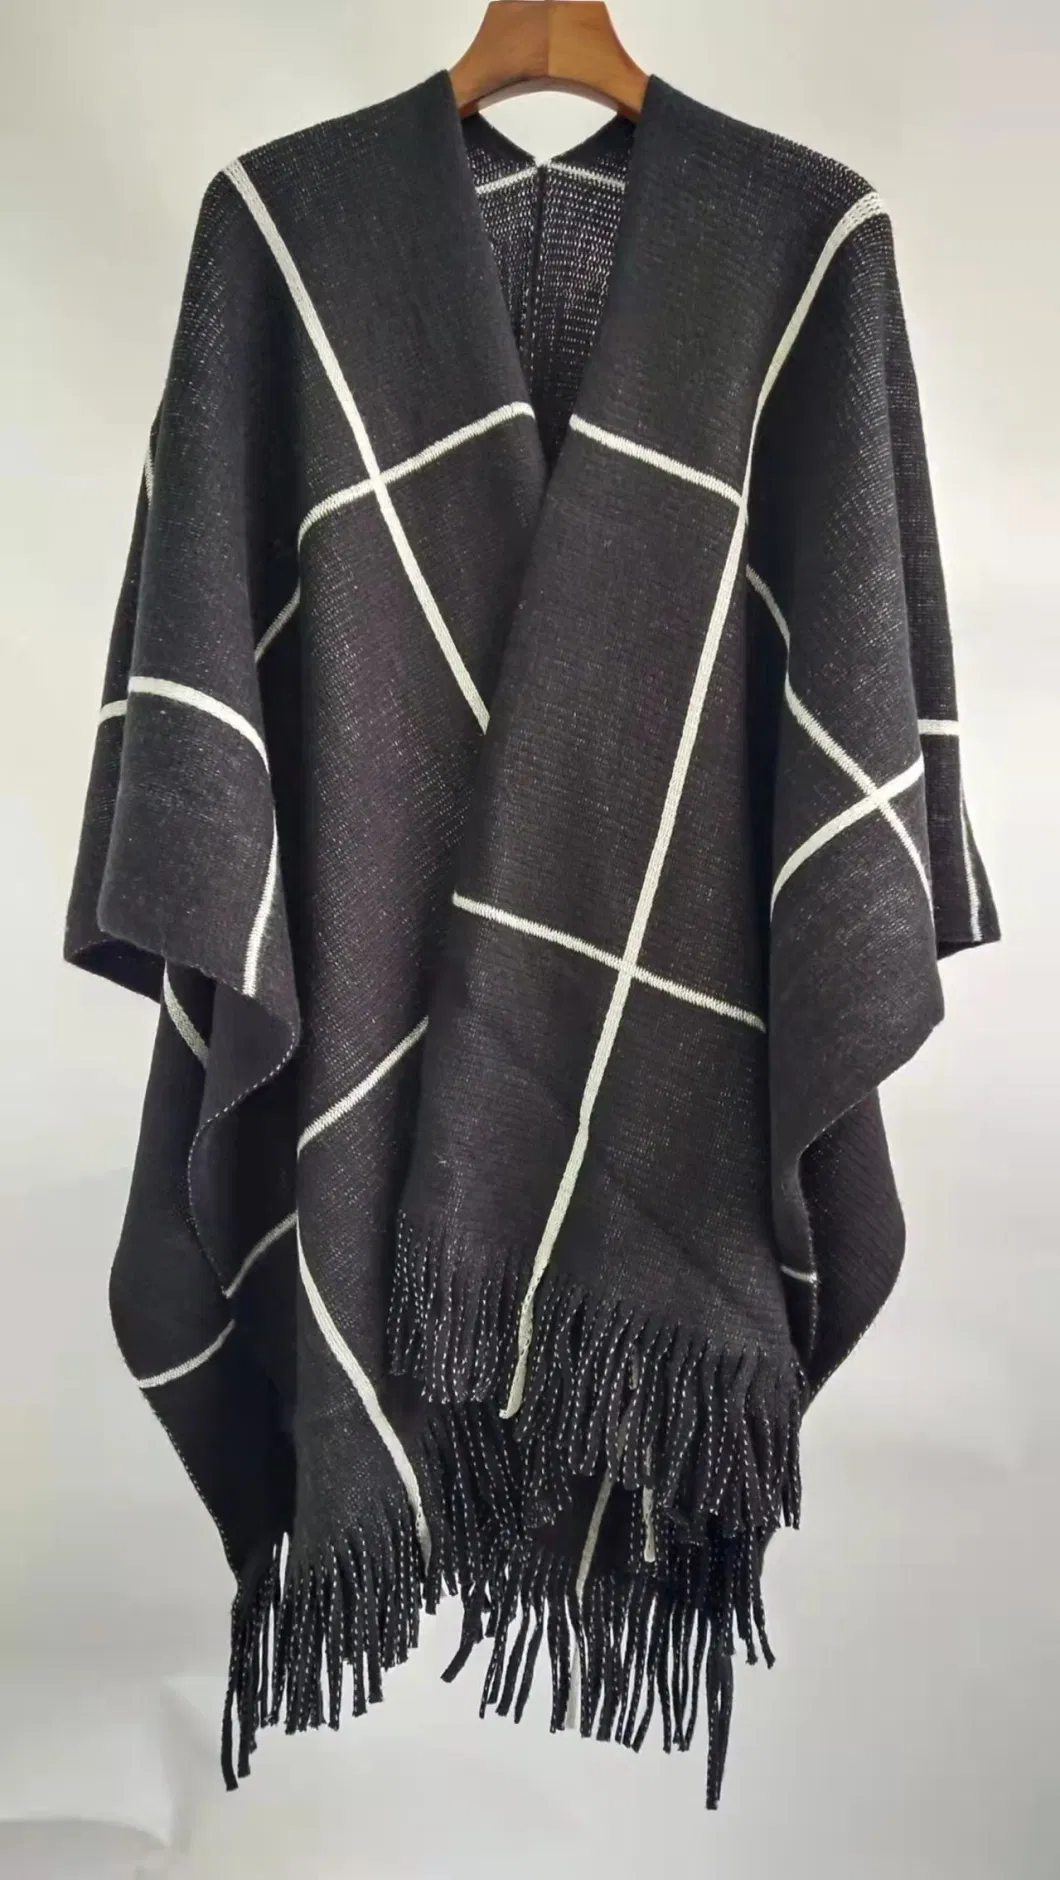 Lady Fashion Elegant Classical Tassel Shepherd Check Knitted Scarf Wrap Shawl